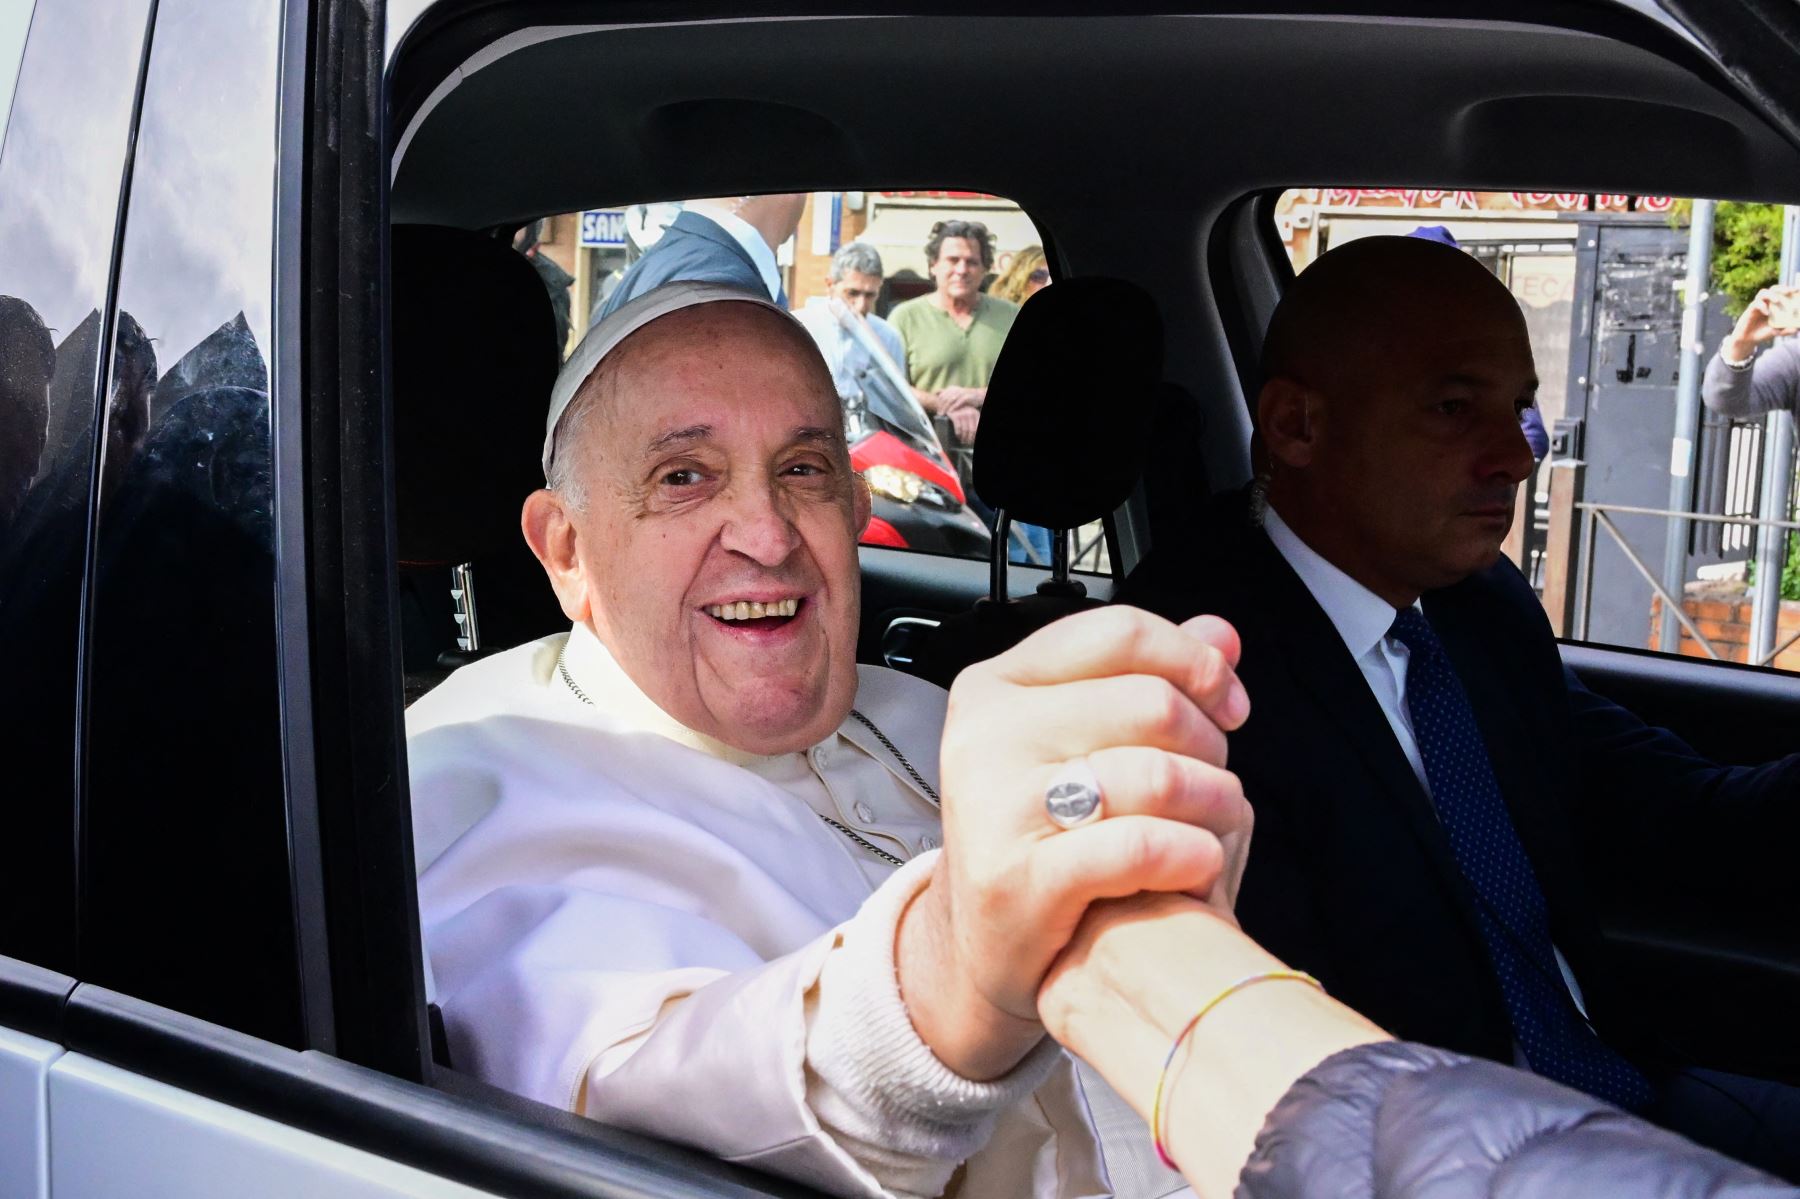 El Papa Francisco abandona el hospital Gemelli en Roma, tras recibir el alta después de un tratamiento contra la bronquitis. El pontífice, de 86 años, ingresó en el hospital Gemelli el 29 de marzo tras sufrir dificultades respiratorias.
Foto: AFP